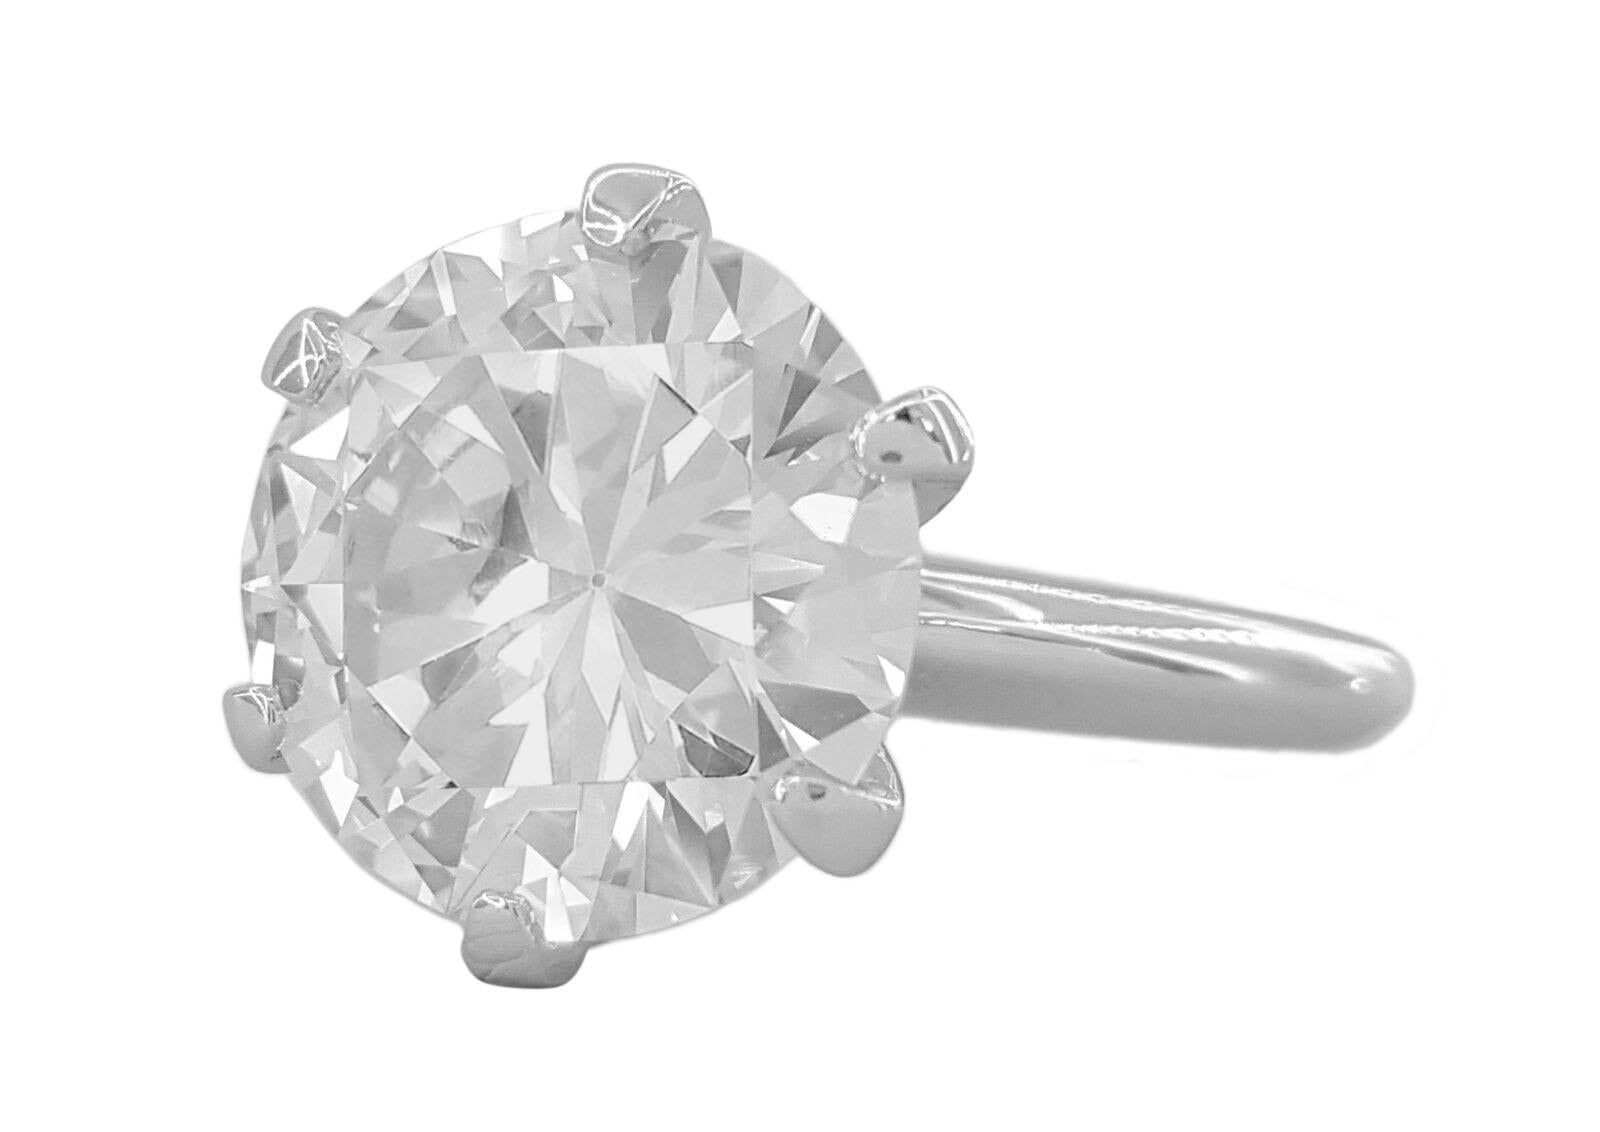 5 carat diamond ring cost